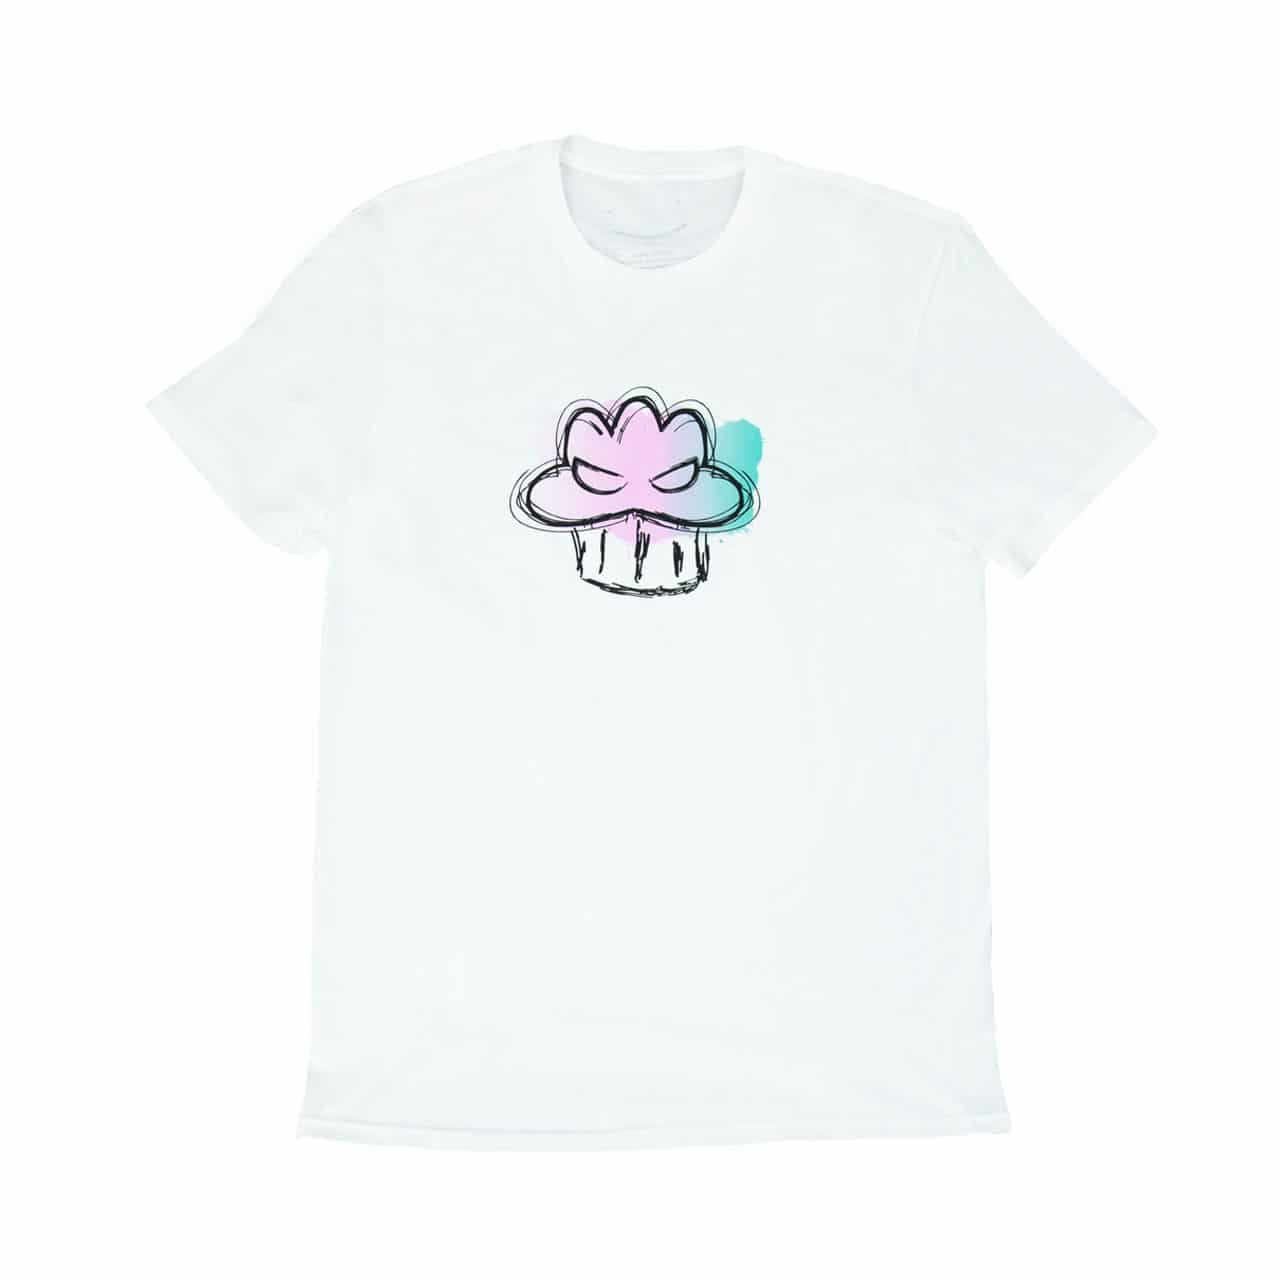 BFCM BadBoyHalo Graffiti Muffin T-Shirt